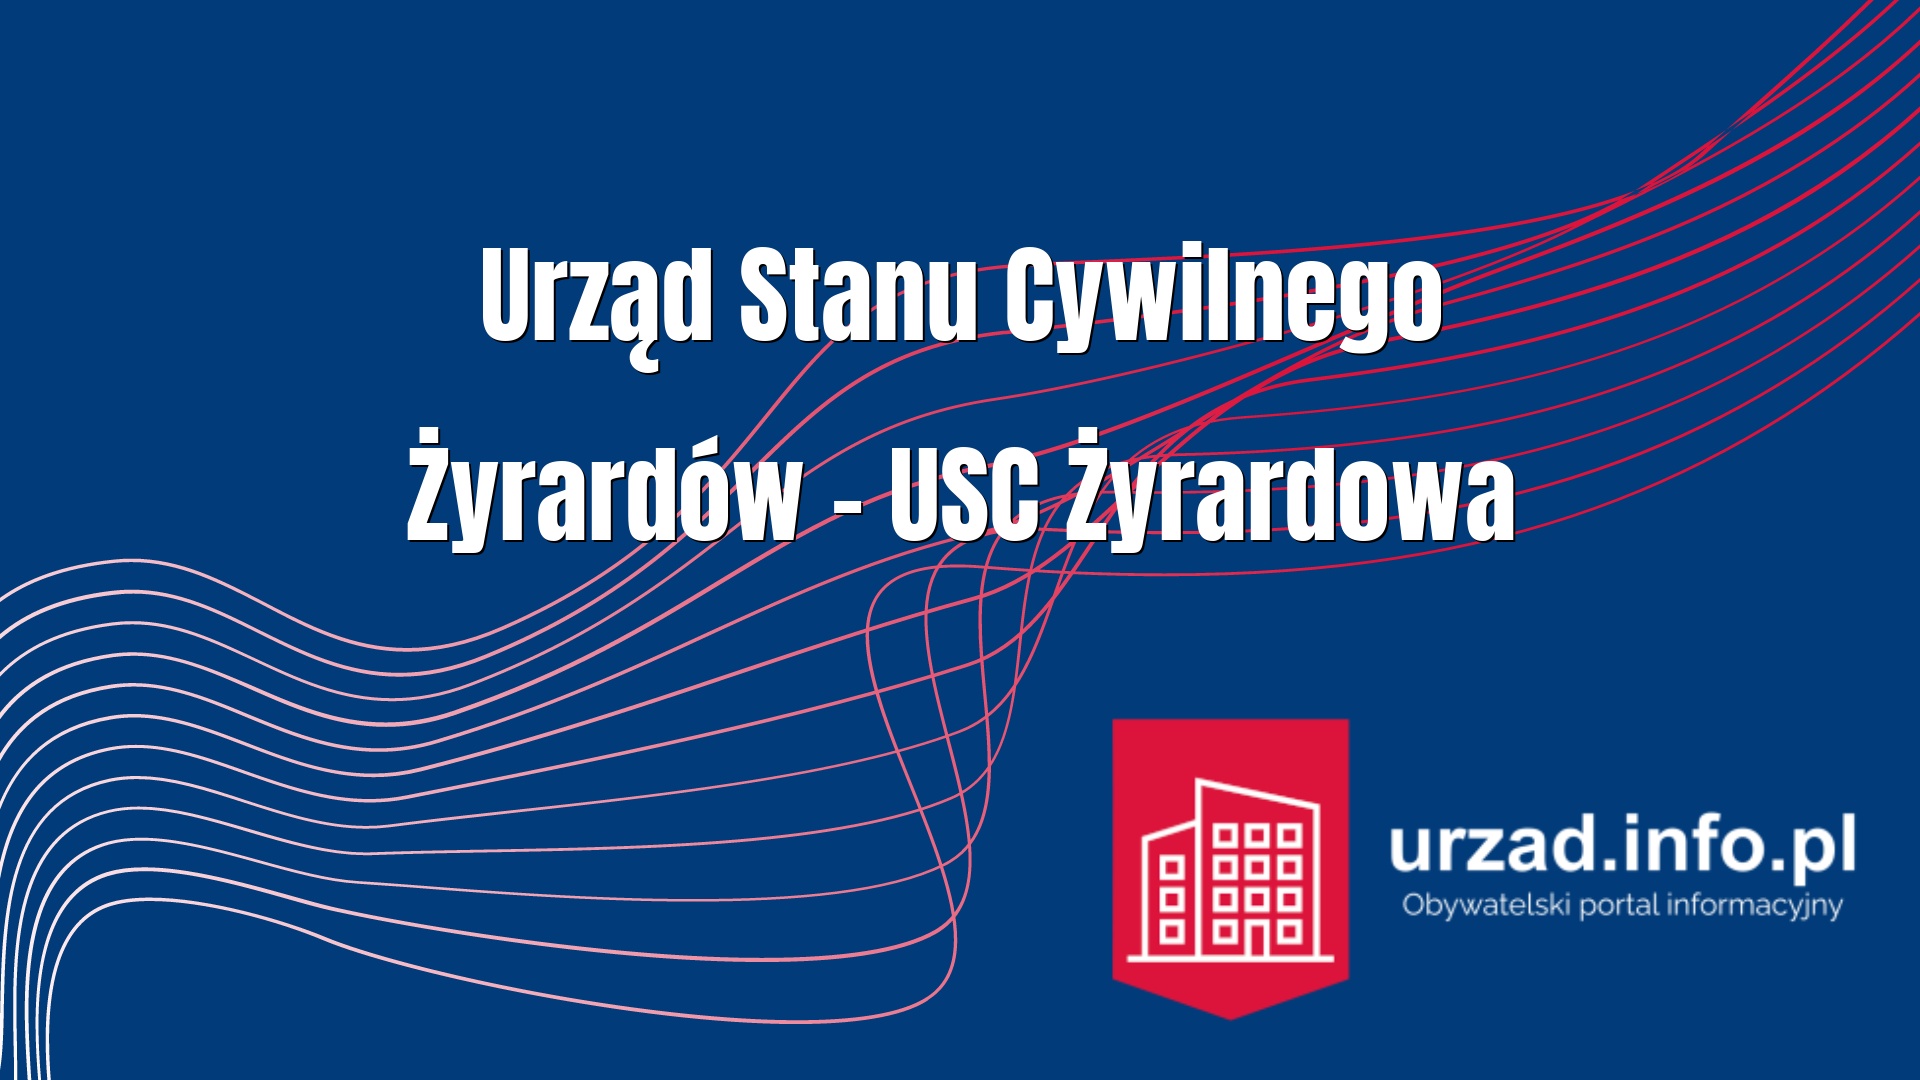 Urząd Stanu Cywilnego Żyrardów – USC Żyrardowa